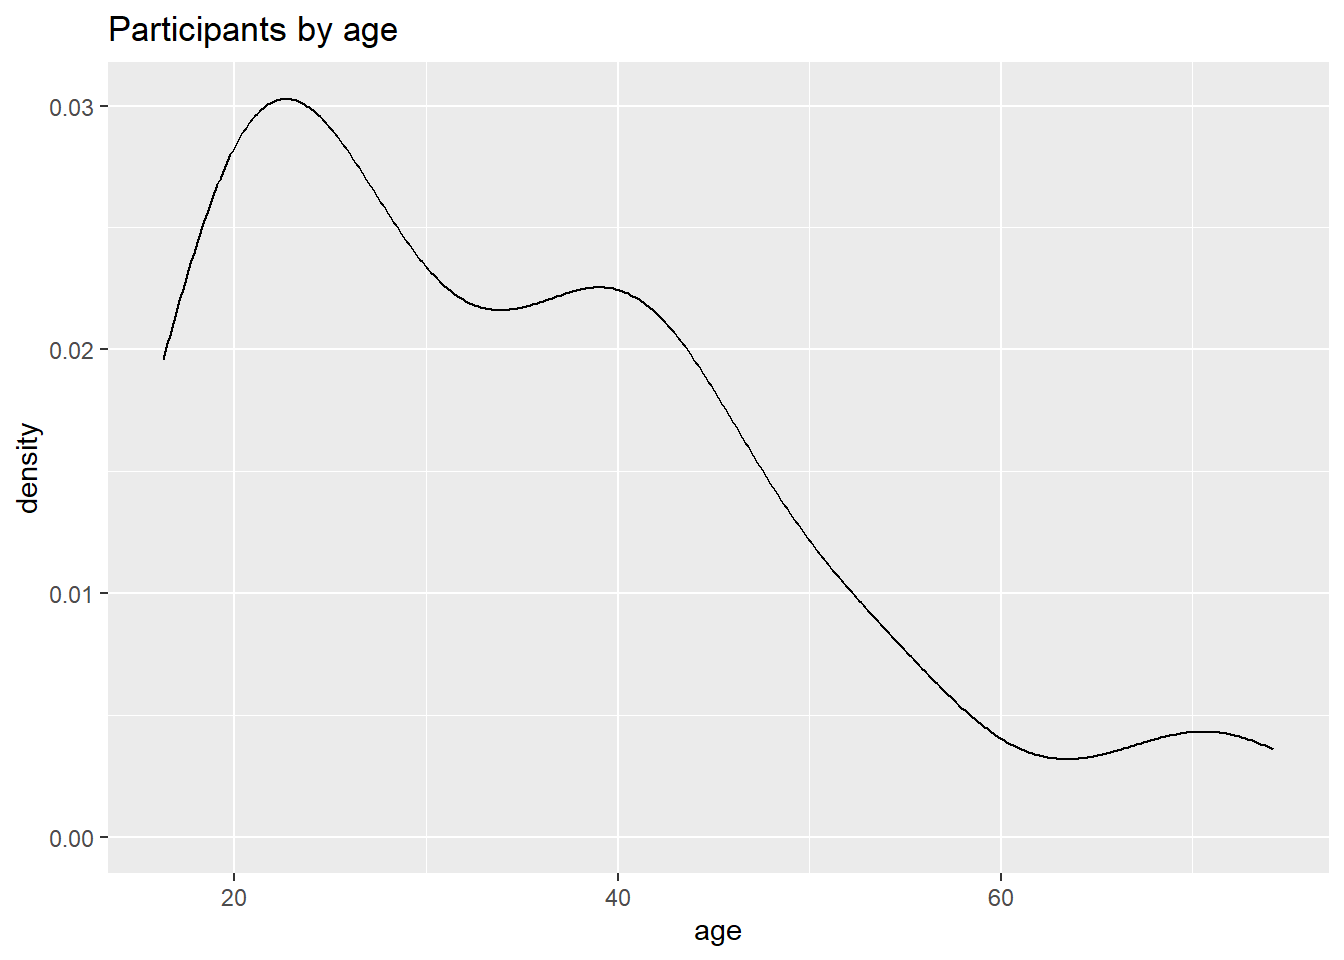 Basic kernel density plot